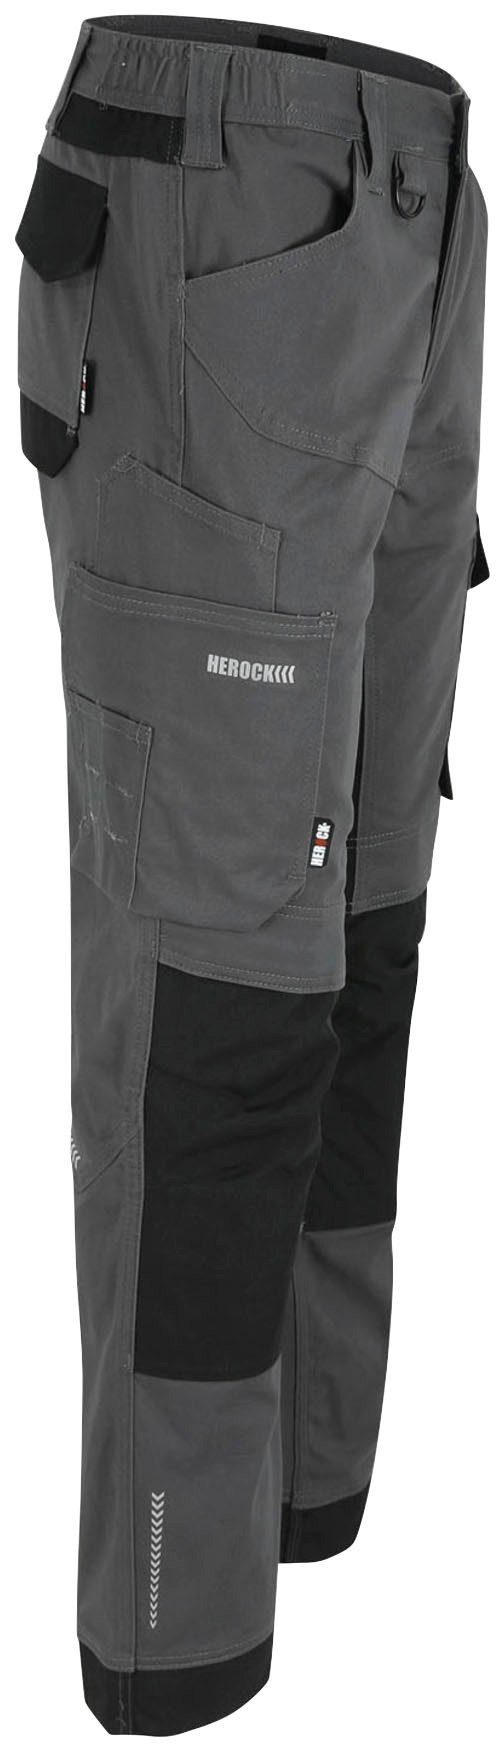 Multi-pocket, Stretch, und Herock Baumwolle, weich bequem wasserabweisend, XENI Arbeitshose grau